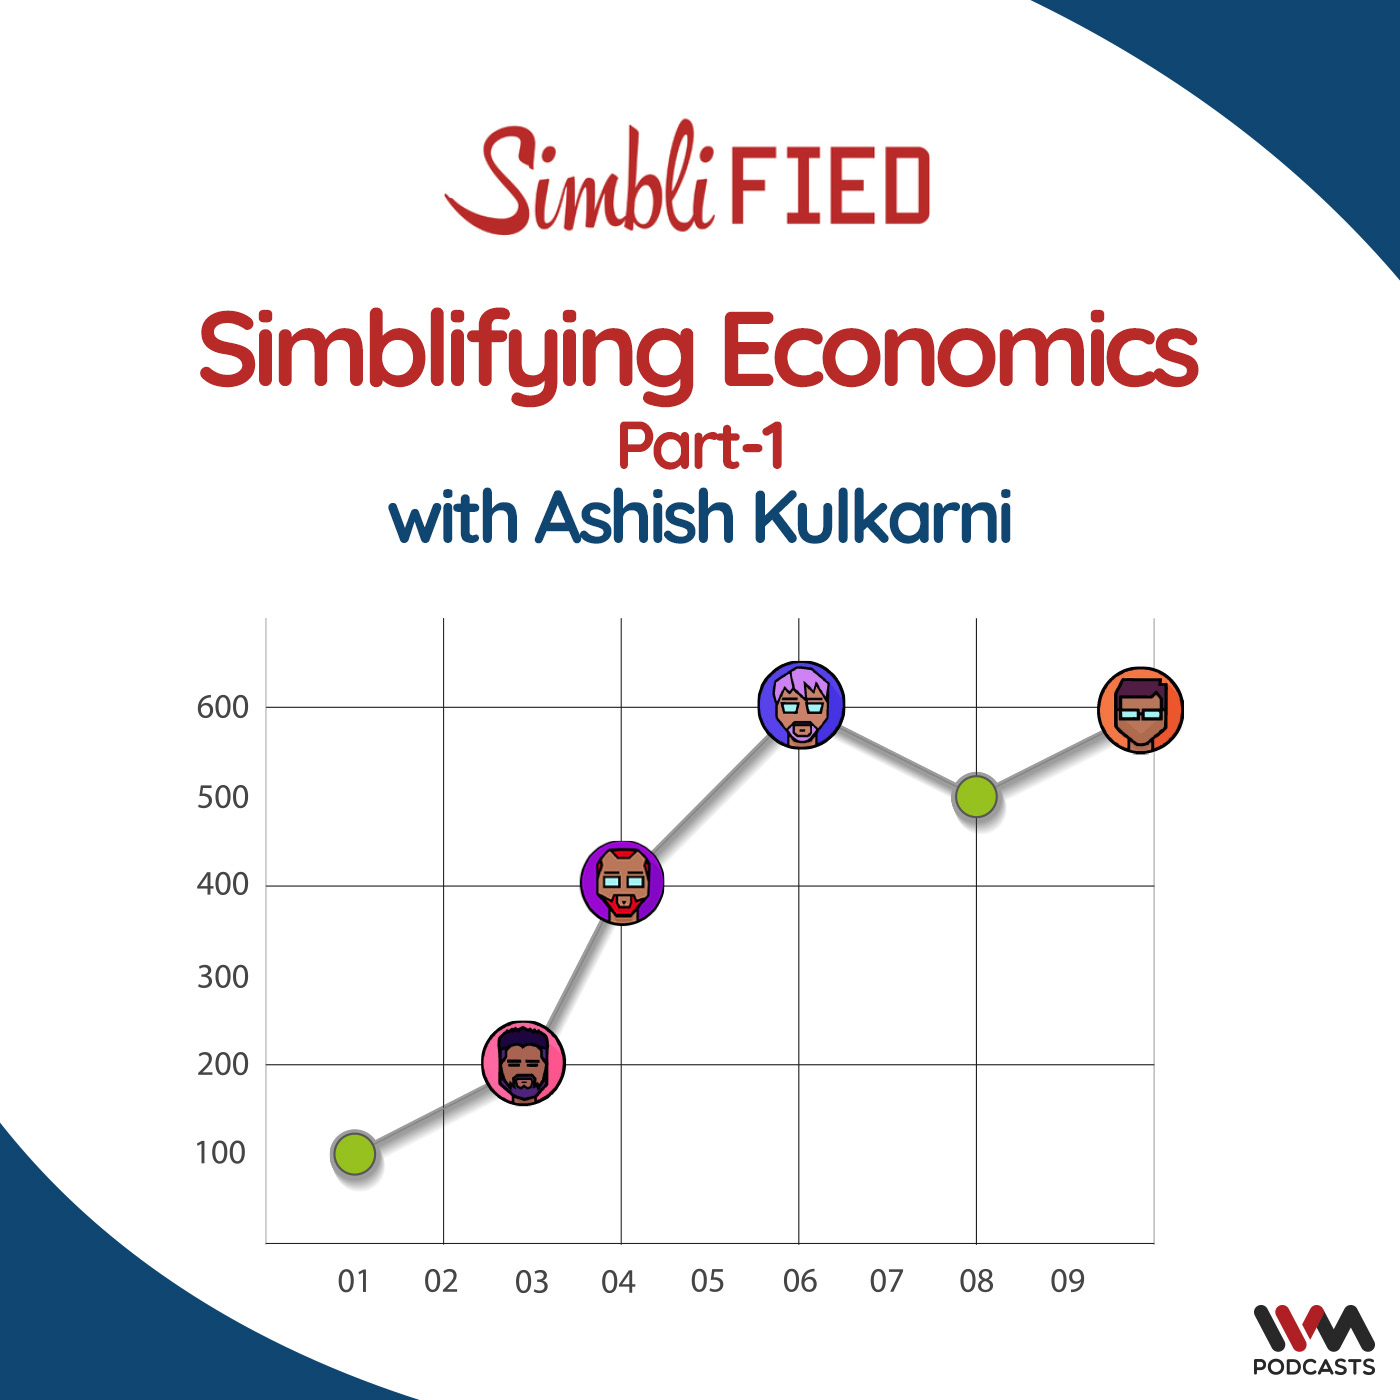 Simblifying Economics with Ashish Kulkarni Part -1